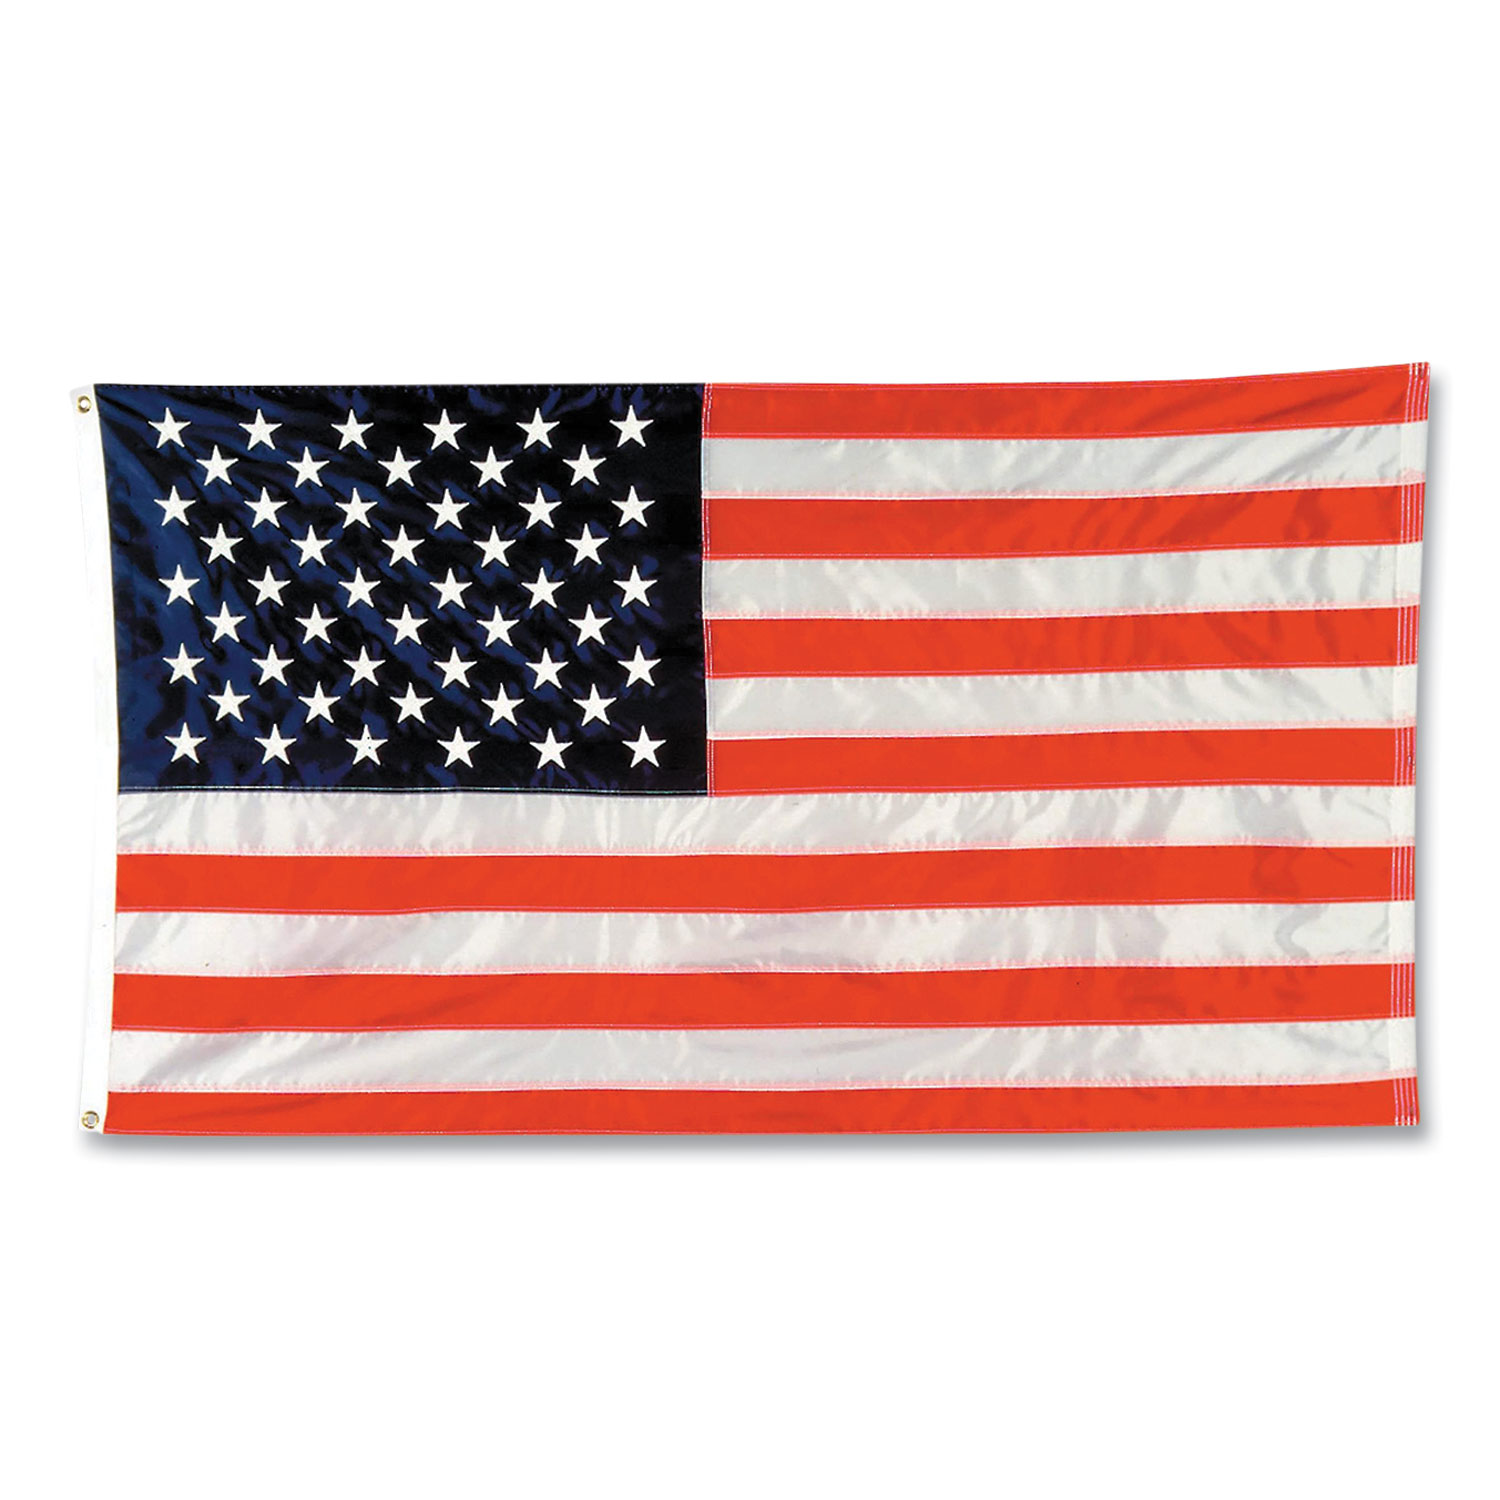 Integrity Flags® Indoor/Outdoor U.S. Flag, Nylon, 8 ft x 5 ft